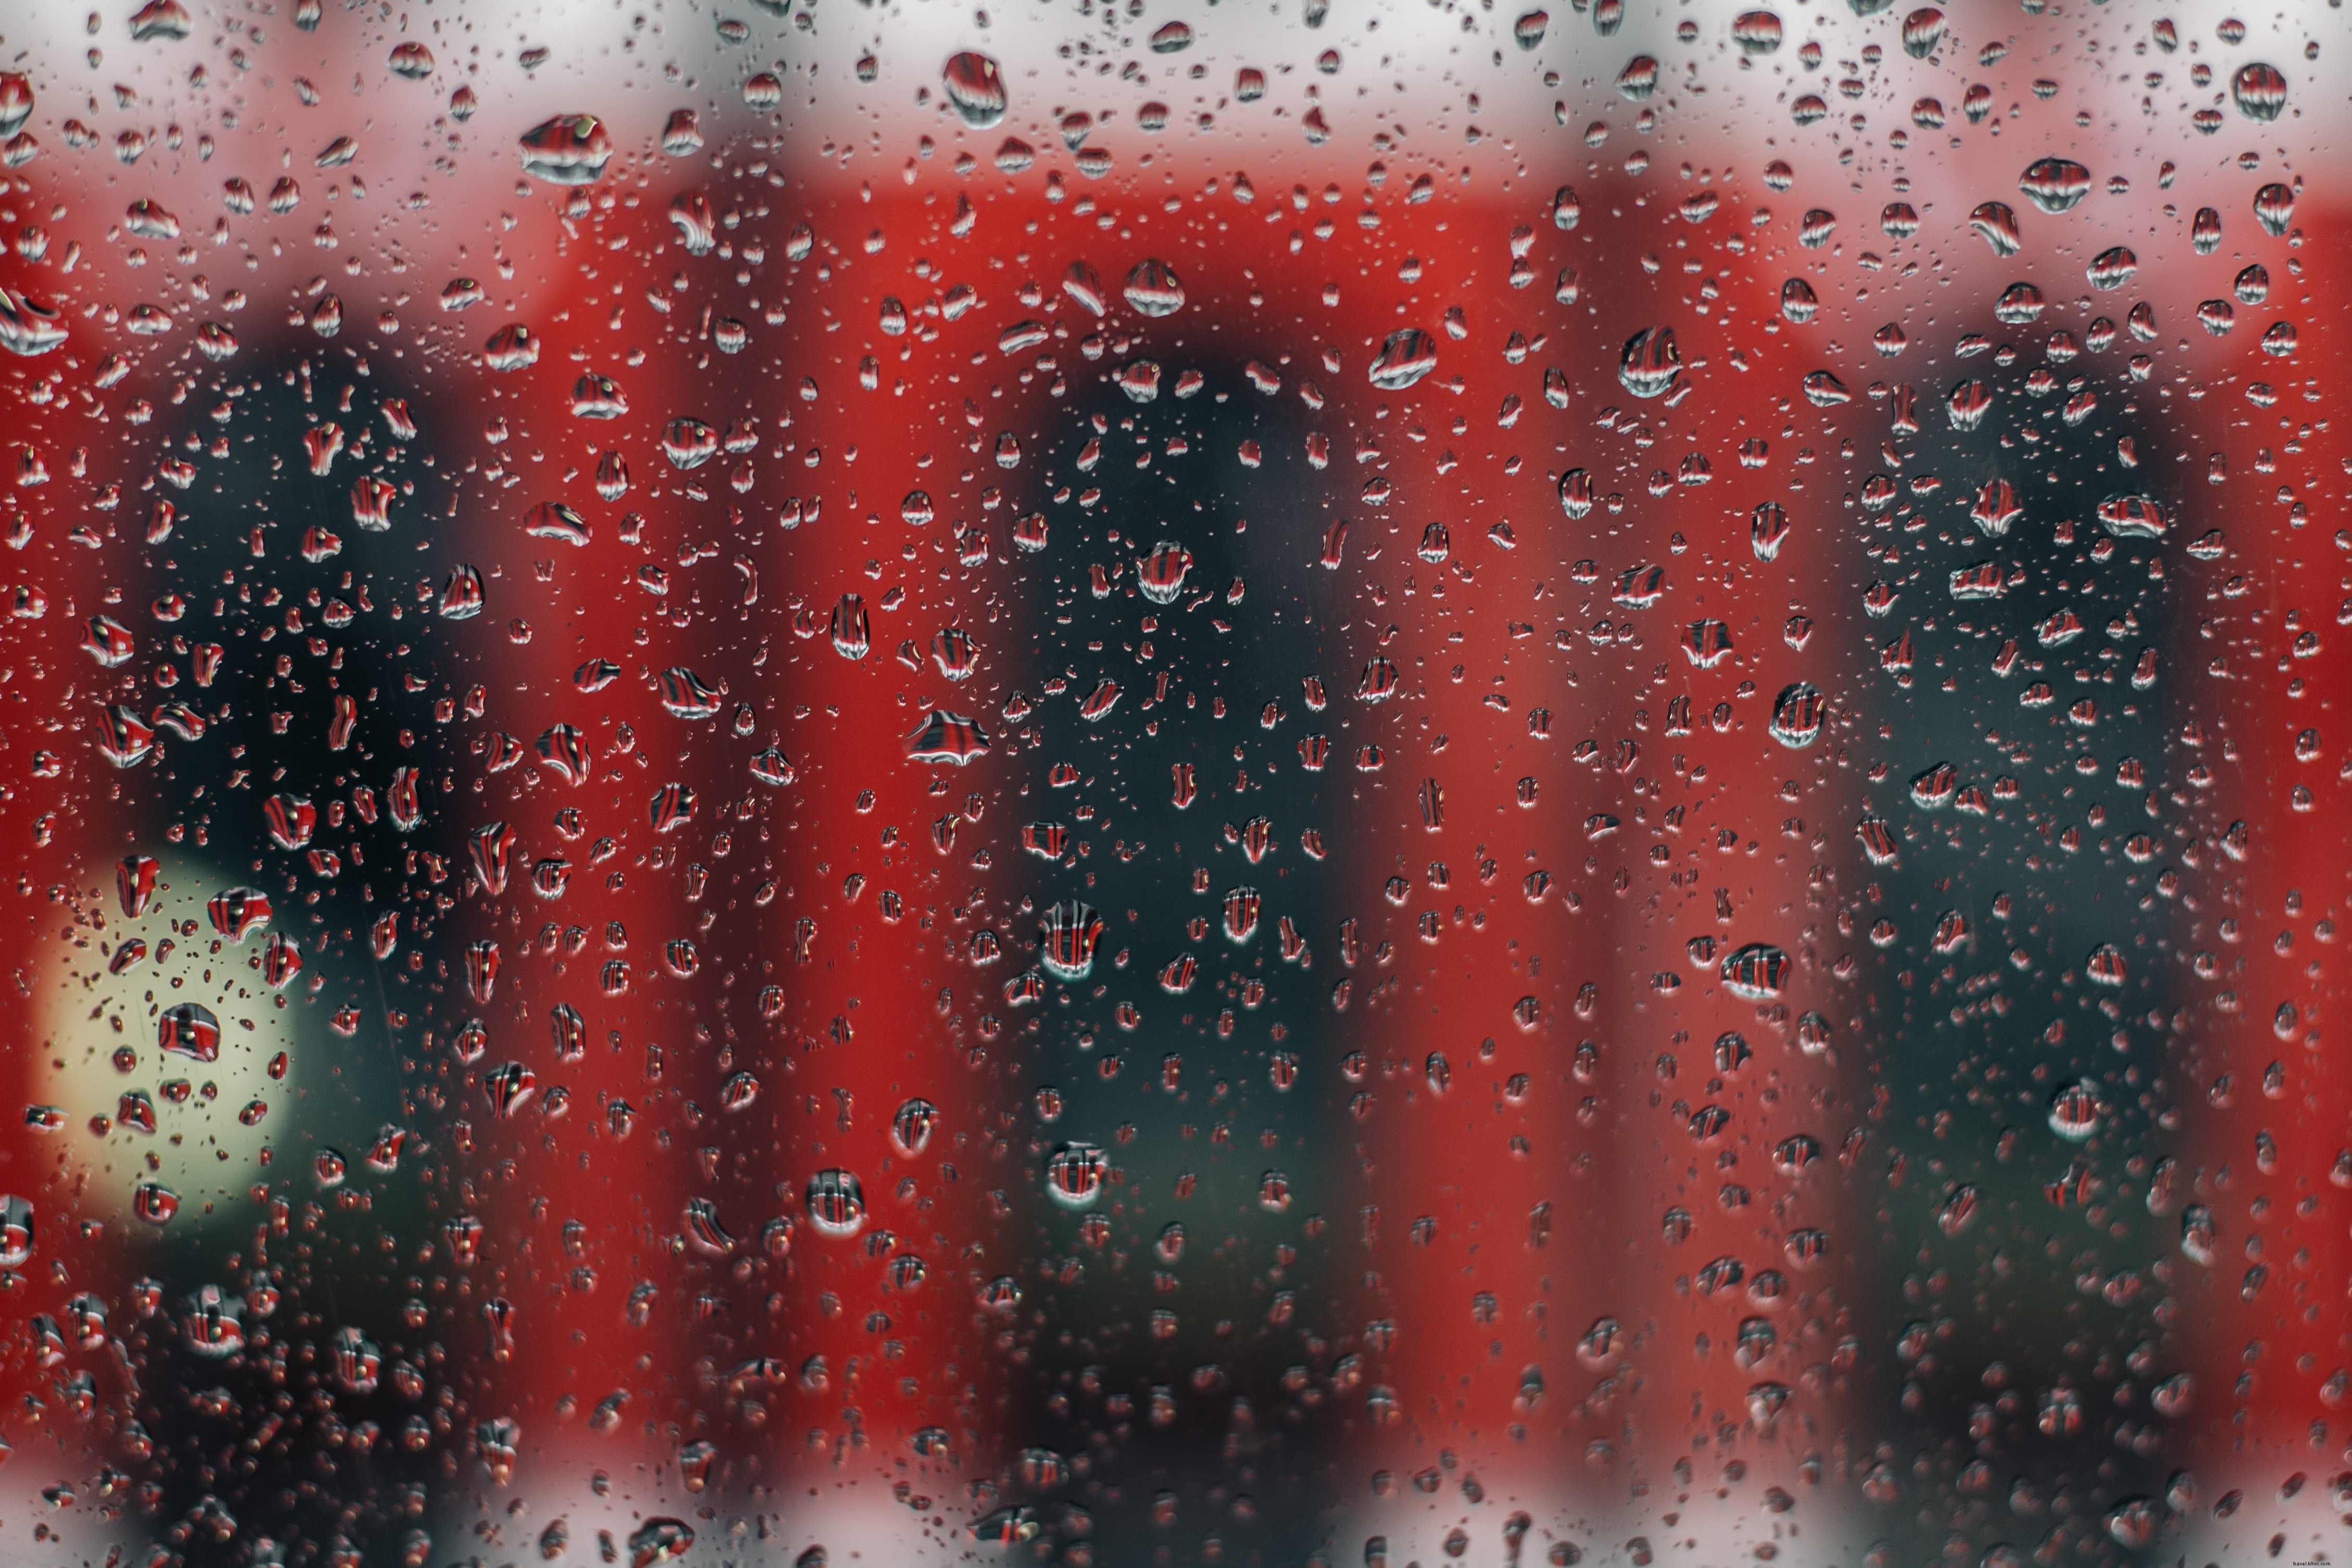 Finestra piovosa con foto del tram rosso